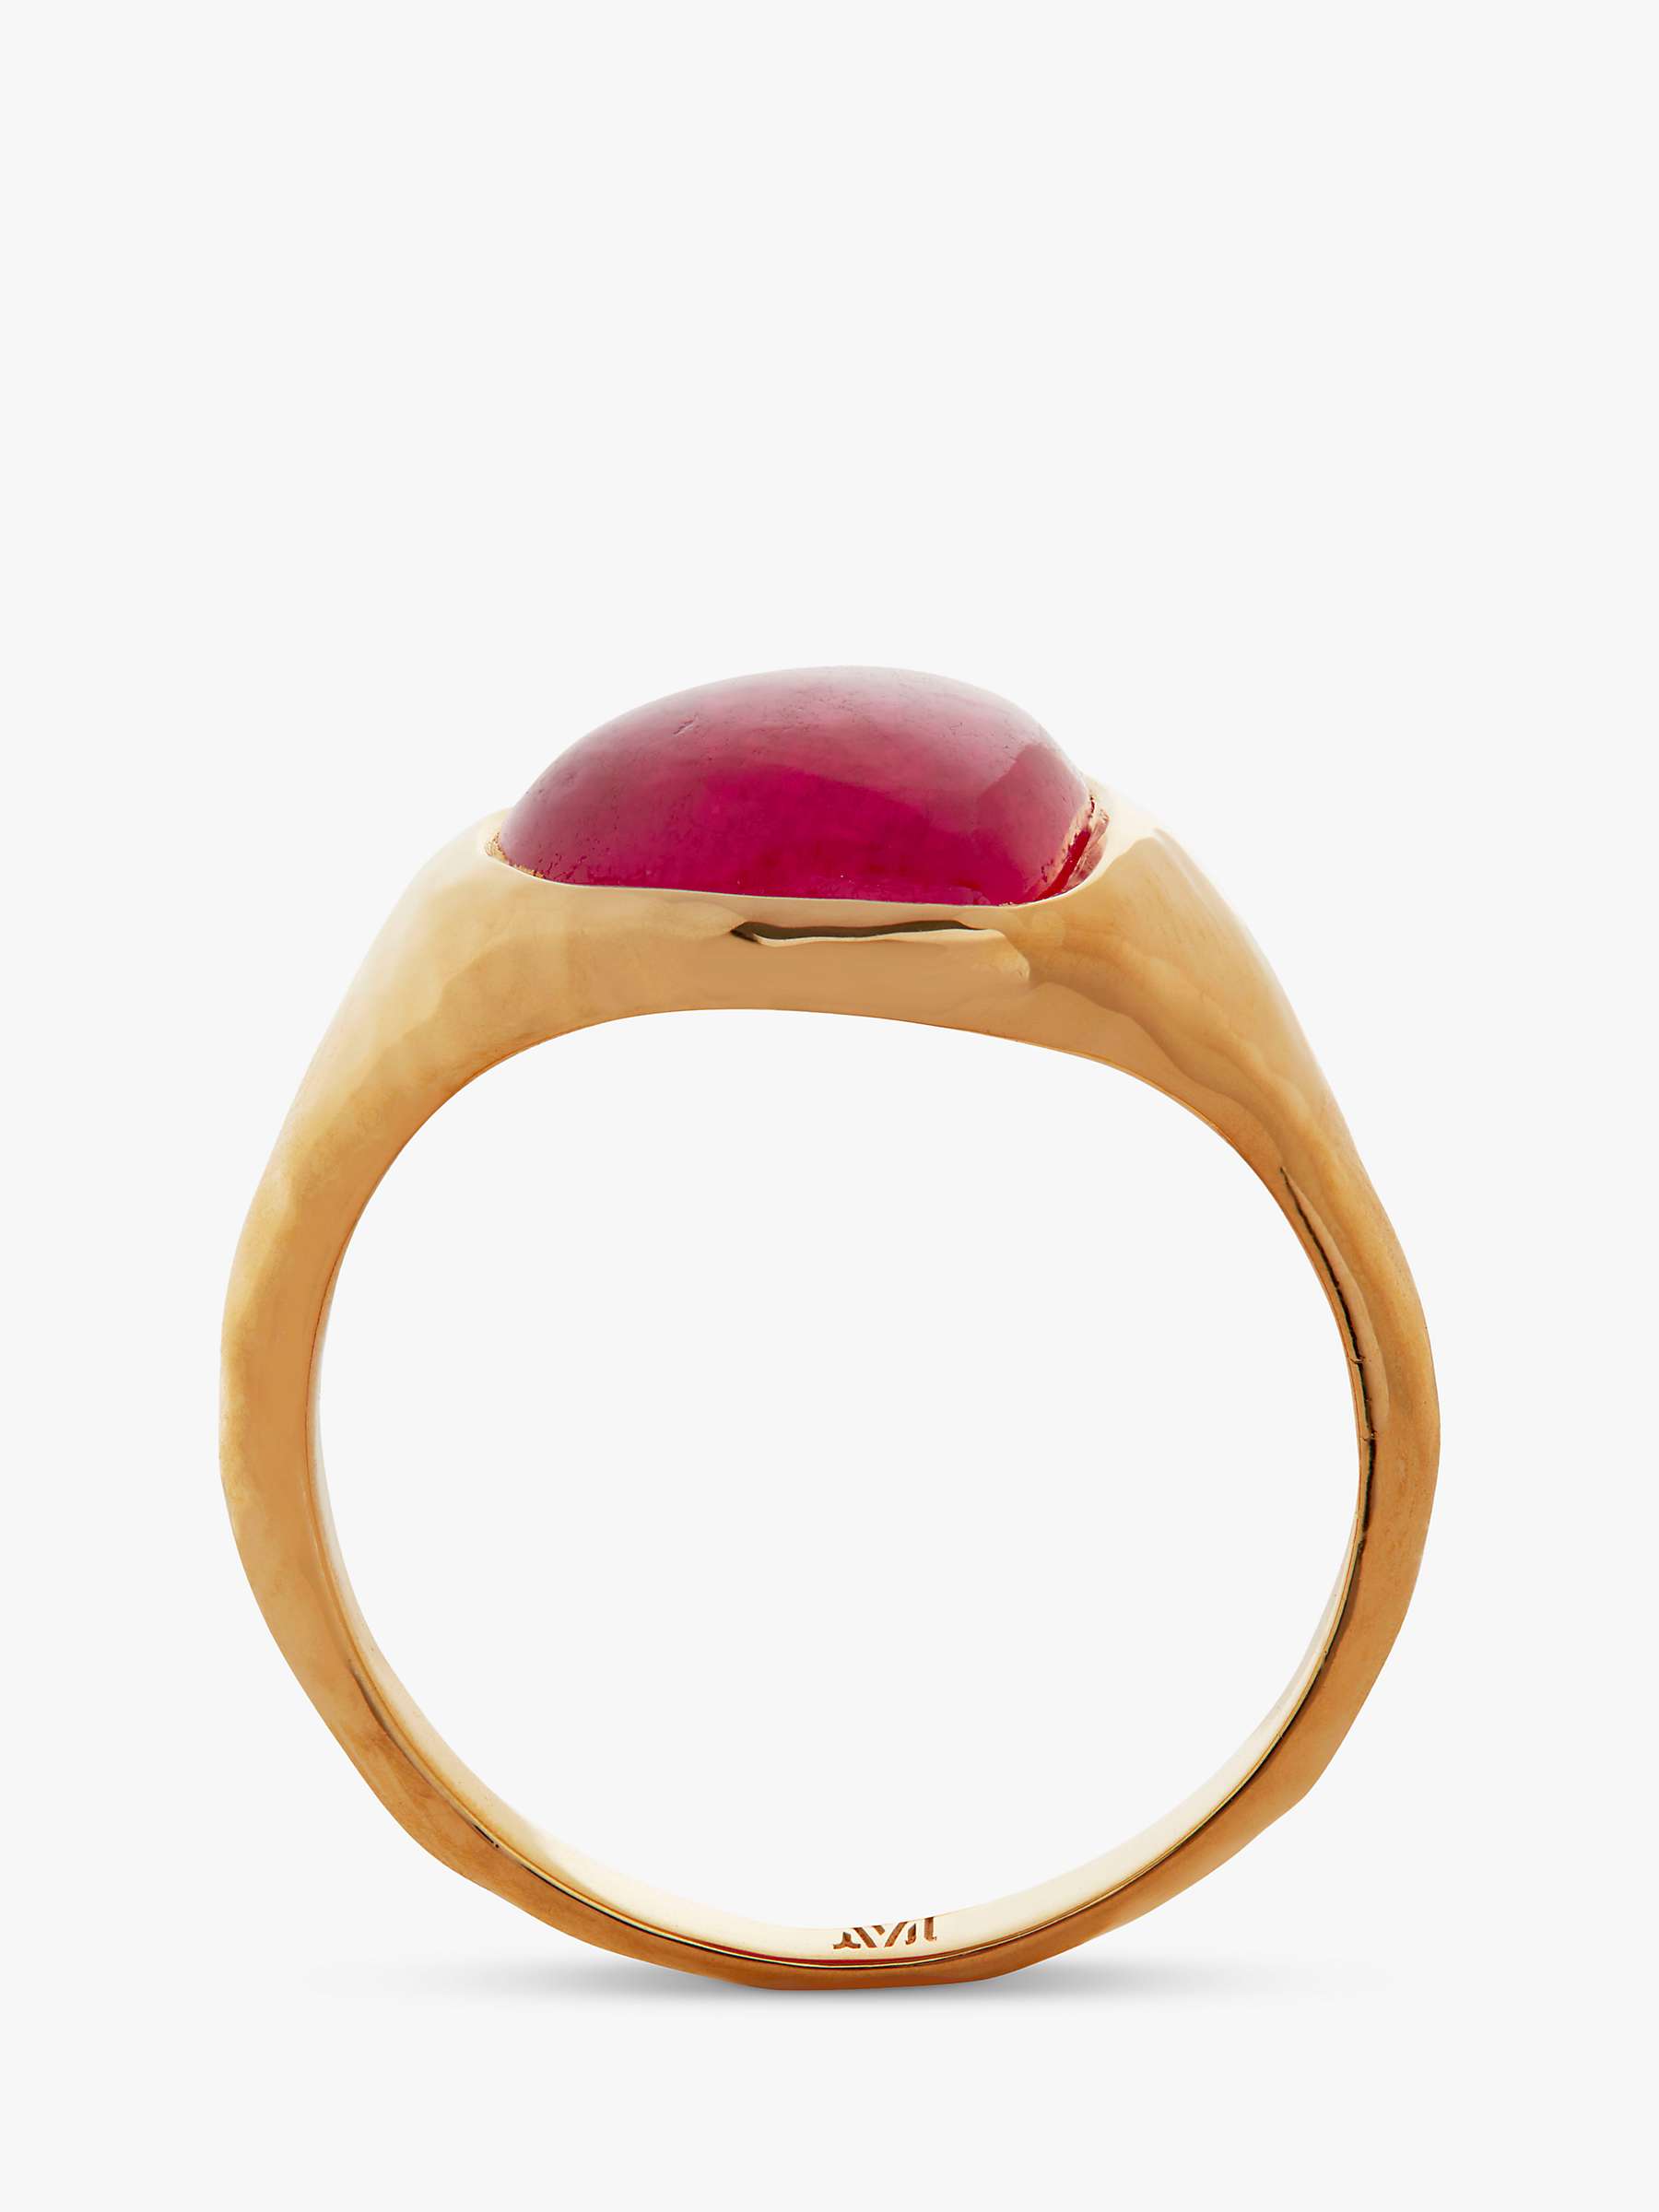 Buy Monica Vinader Rio Pink Quartz Ring, Gold Online at johnlewis.com